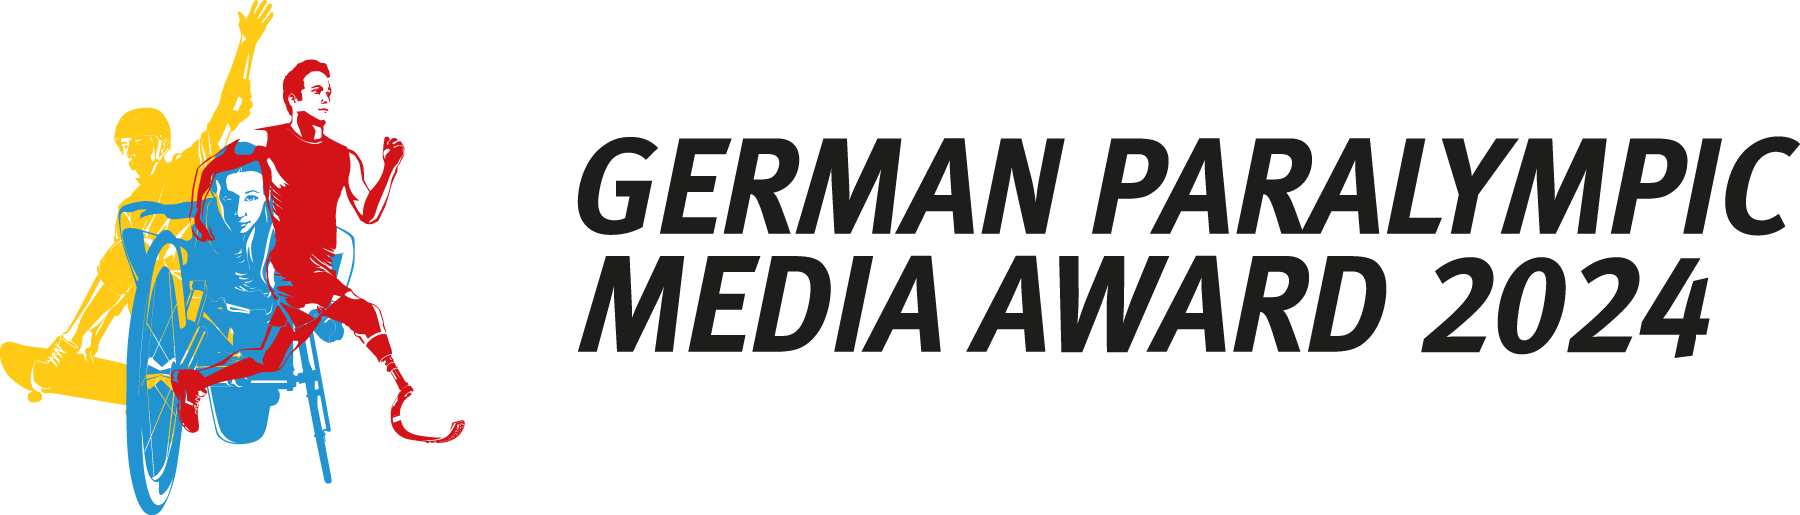 GPMA Logo